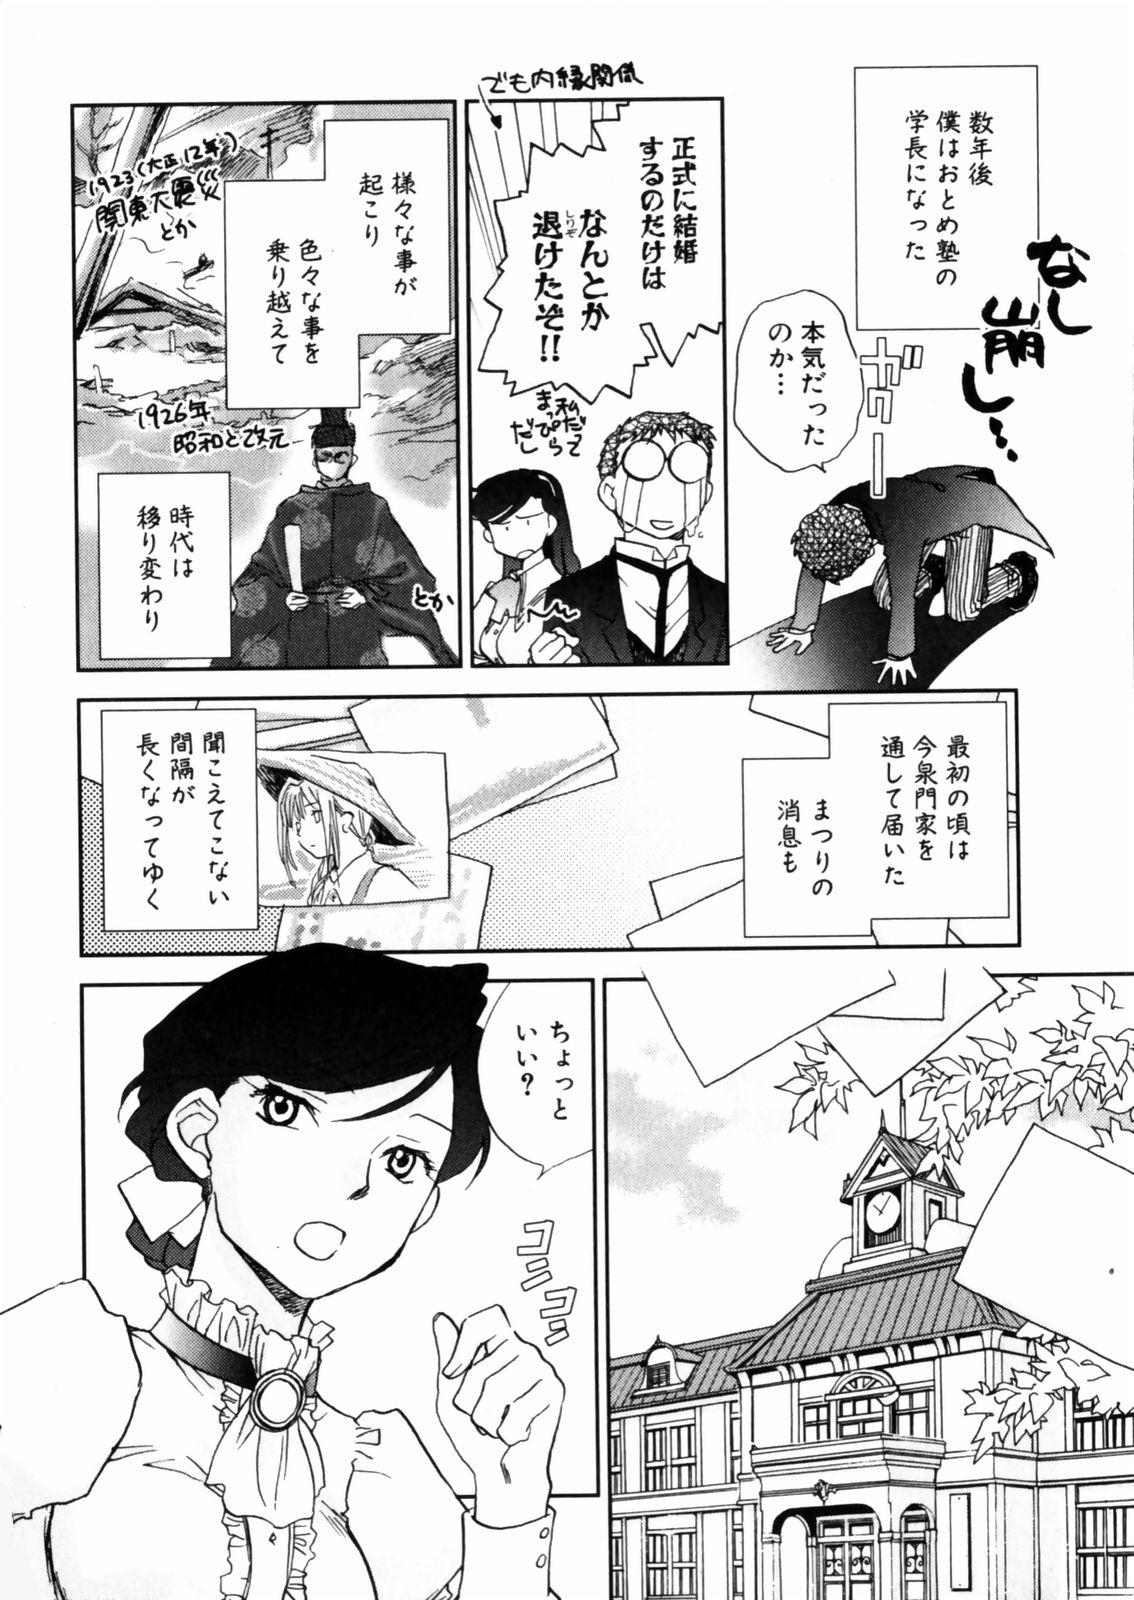 [Okano Ahiru] Hanasake ! Otome Juku (Otome Private Tutoring School) Vol.2 133